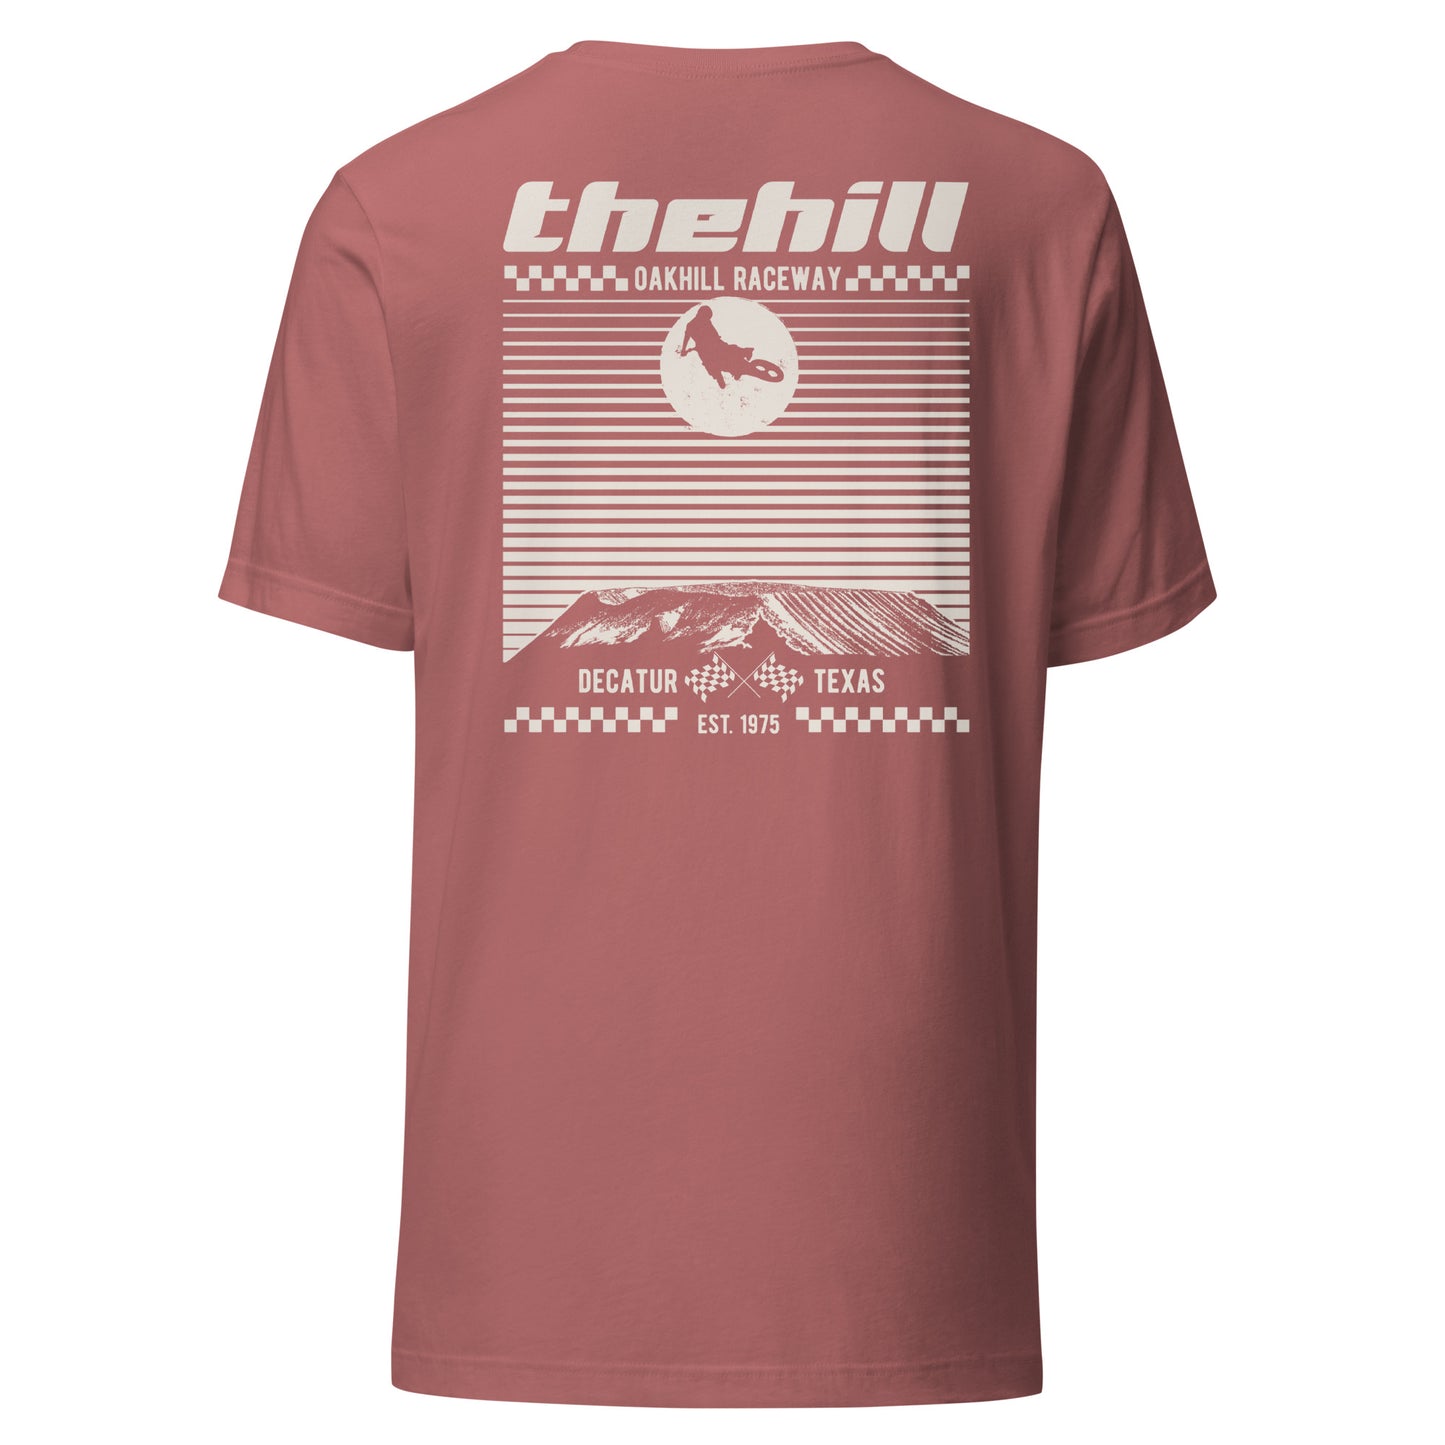 Oakhill Raceway "The Hill" T-Shirt